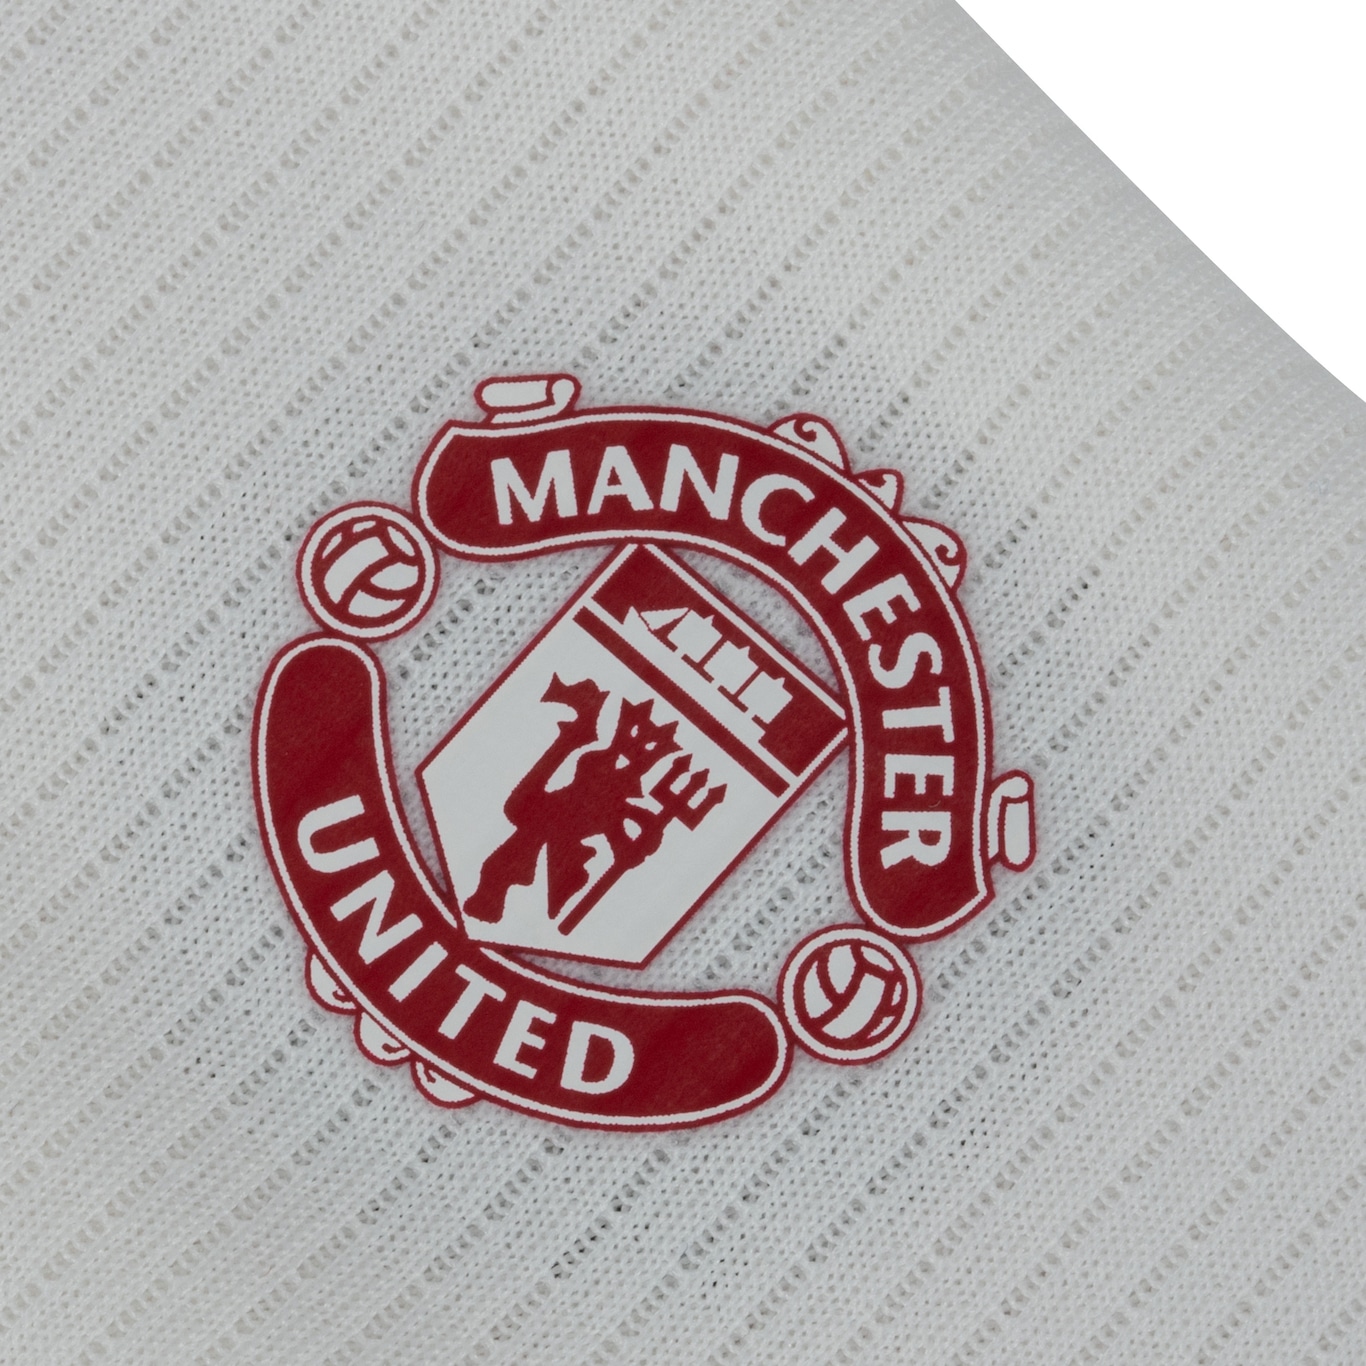 Camisa Manchester United III 23 adidas Infantil Torcedor - Foto 6